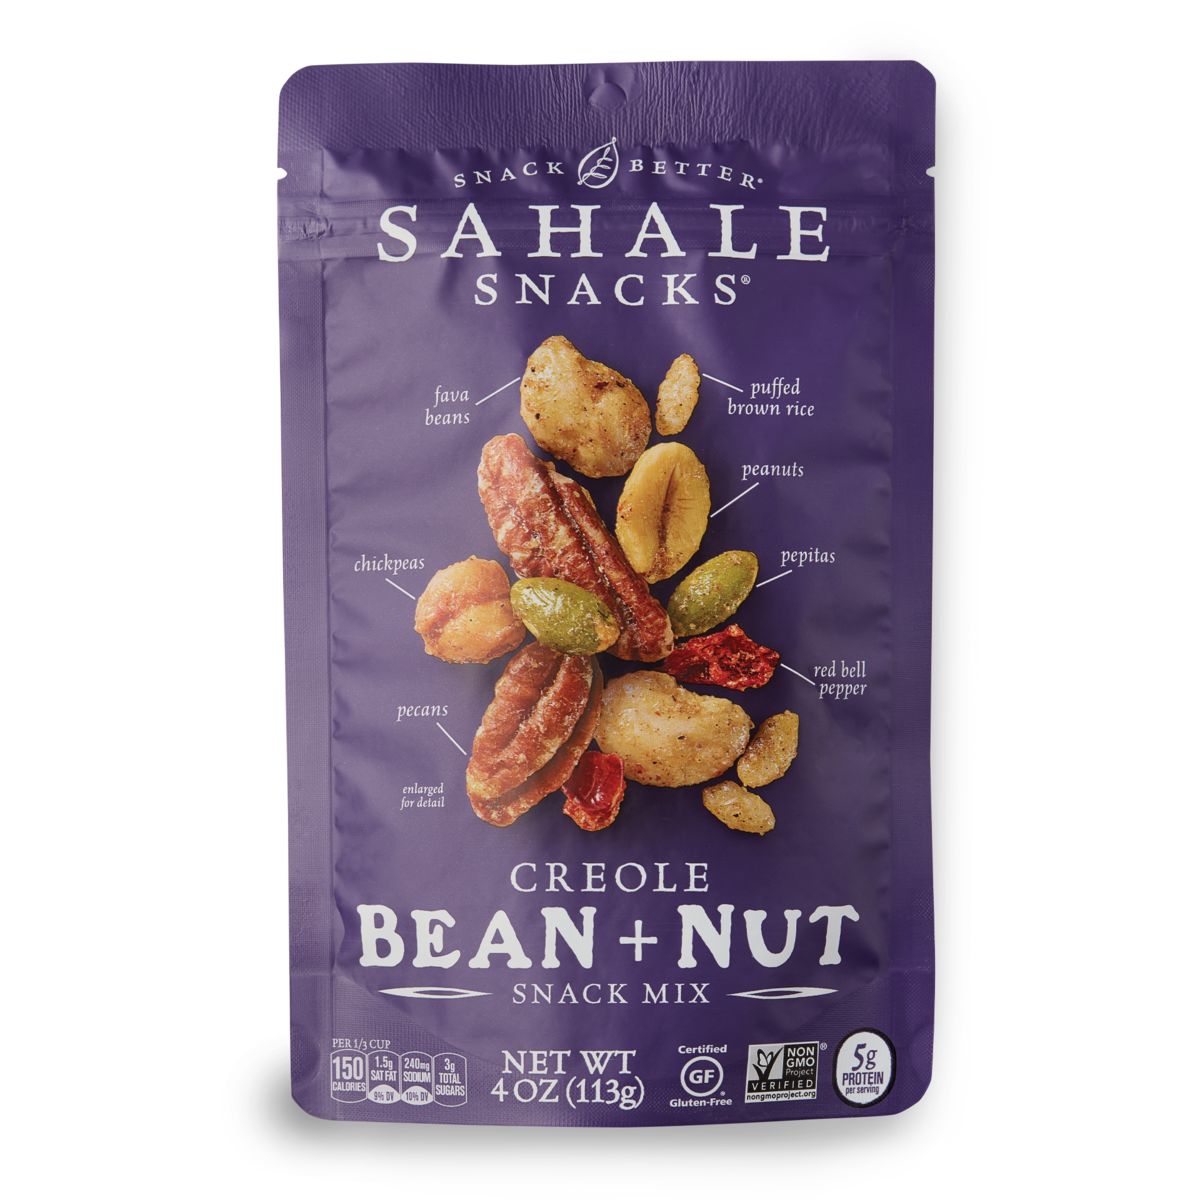 creole-bean-nut-snack-mix-or-sahale-snacks-r